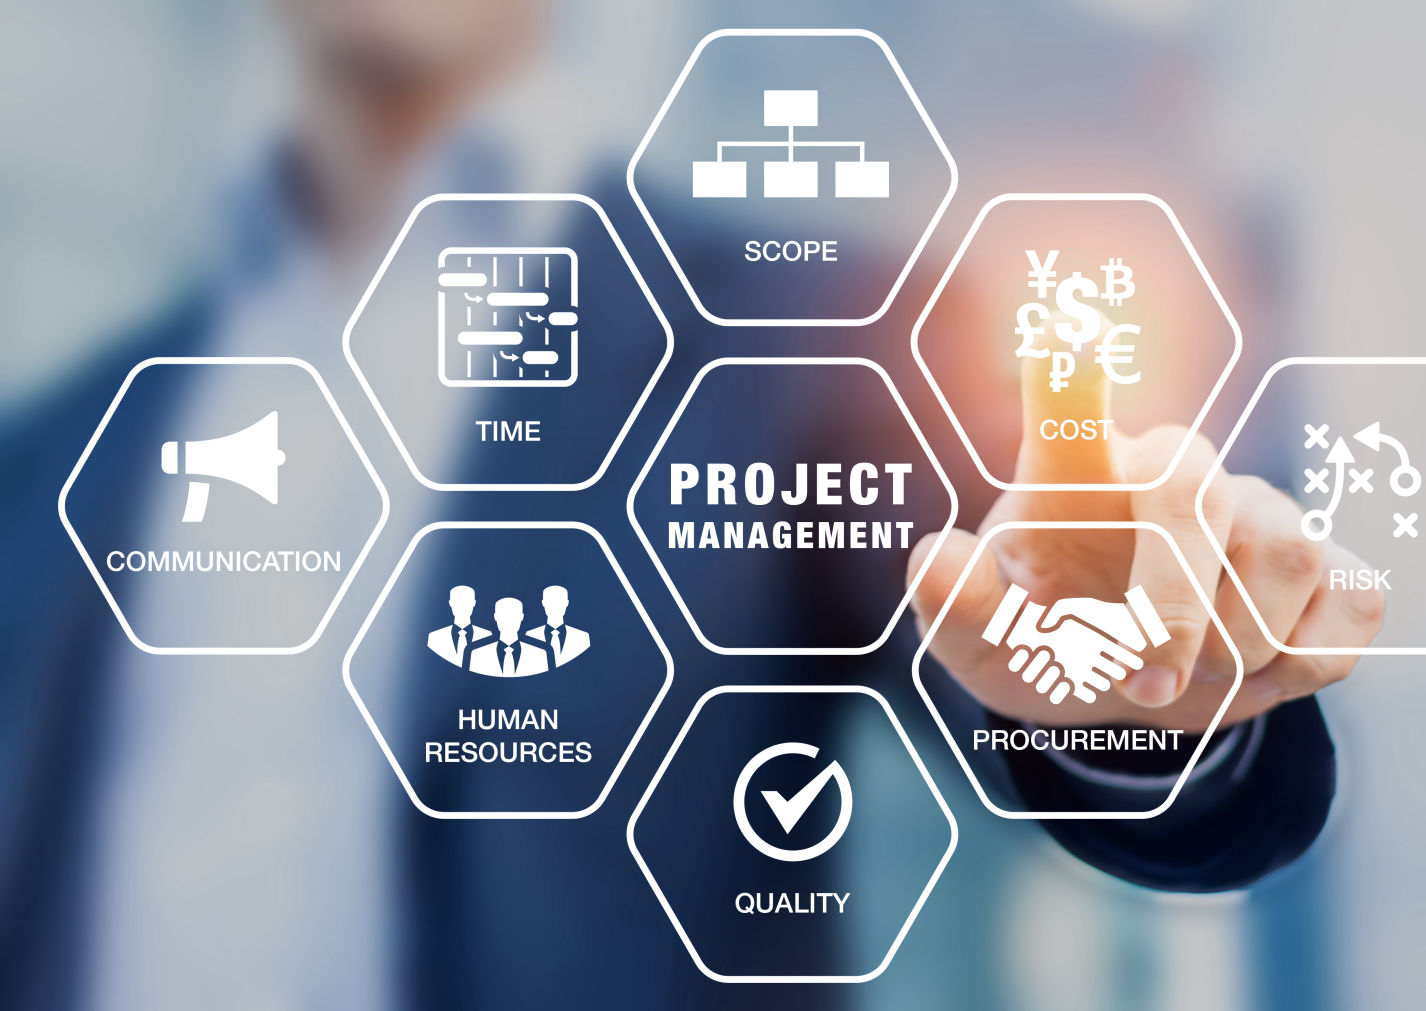 Project Management Service